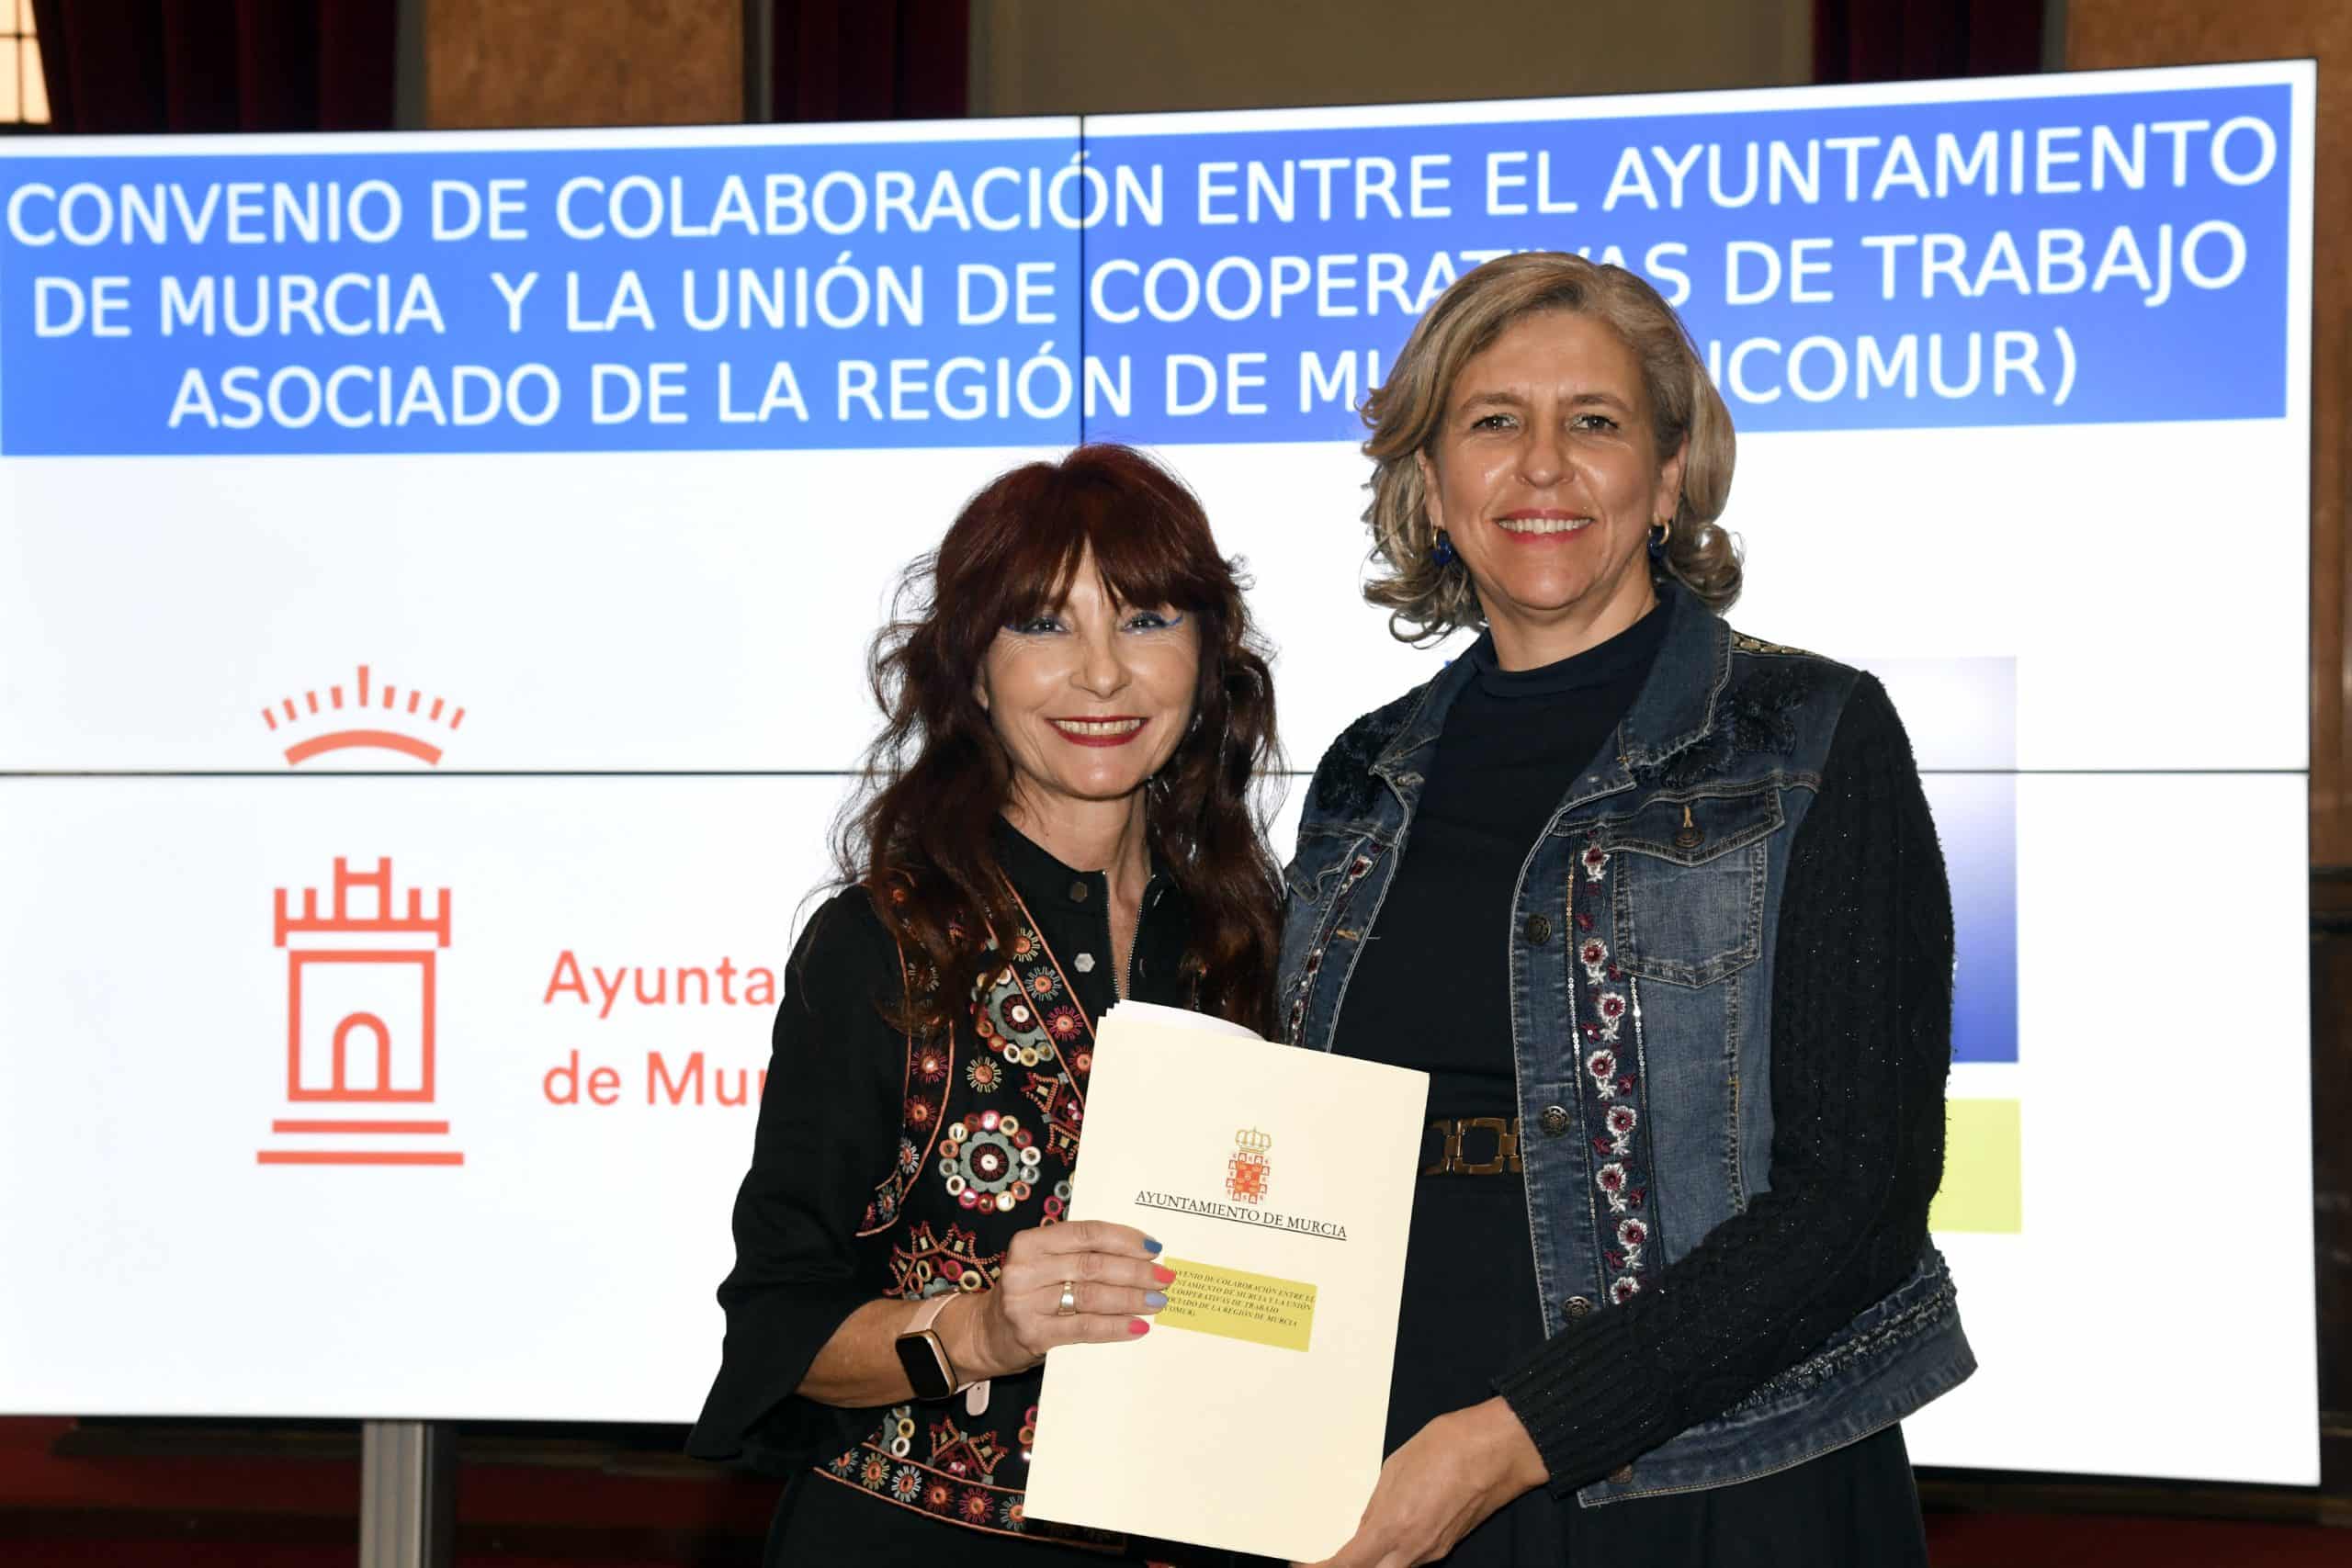 La directora de Empresa de Ucomur, Ruth Guerola, posa junto a la concejala de Gobierno Abierto, Promoción Económica y Empleo del Ayto. de Murcia, Mercedes Bernabé